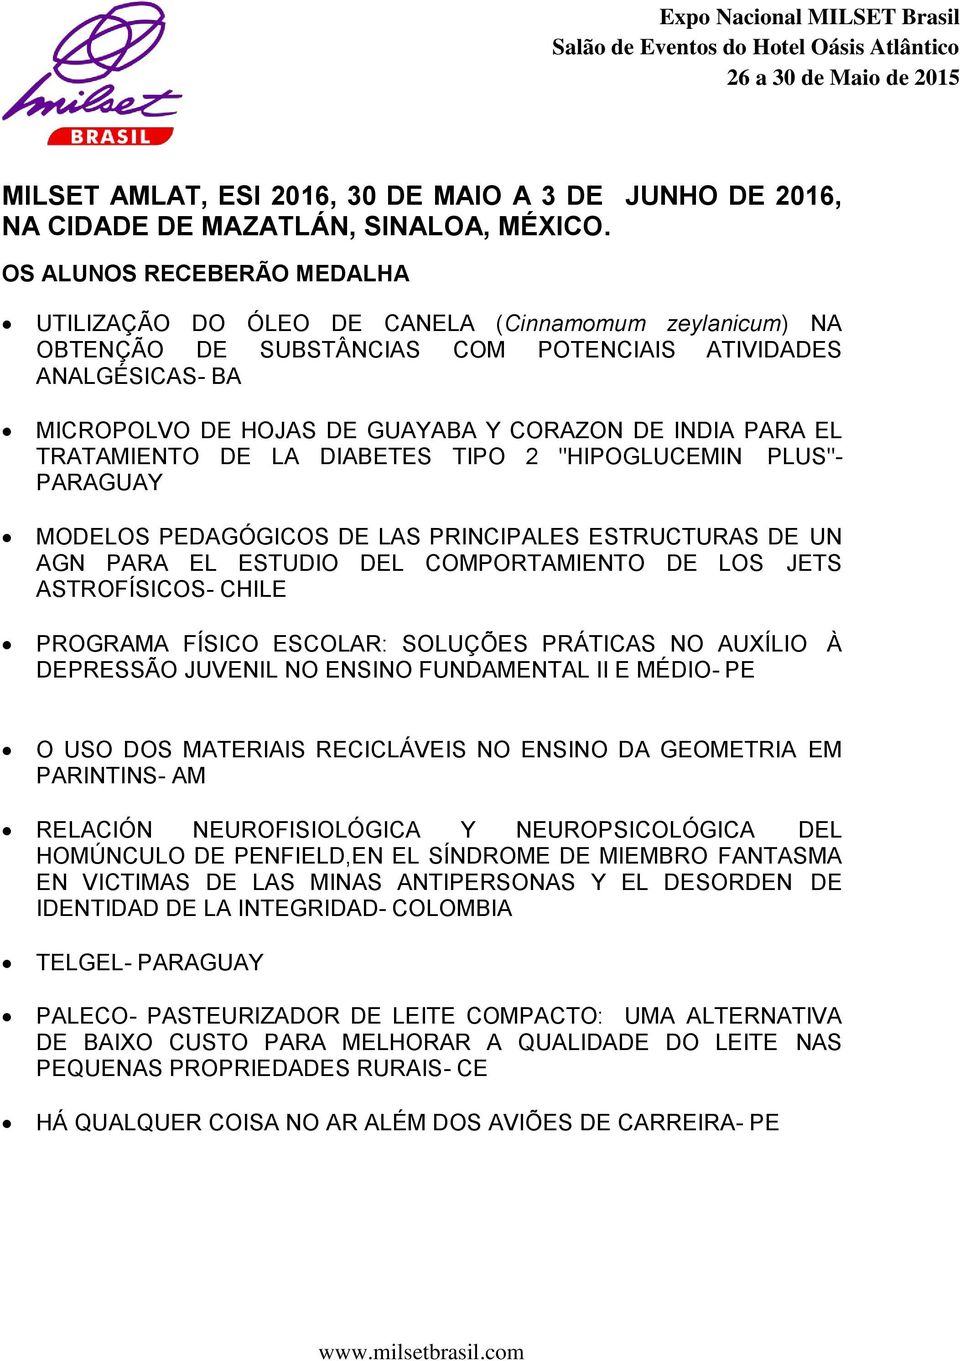 PARA EL TRATAMIENTO DE LA DIABETES TIPO 2 "HIPOGLUCEMIN PLUS"- PARAGUAY MODELOS PEDAGÓGICOS DE LAS PRINCIPALES ESTRUCTURAS DE UN AGN PARA EL ESTUDIO DEL COMPORTAMIENTO DE LOS JETS ASTROFÍSICOS- CHILE